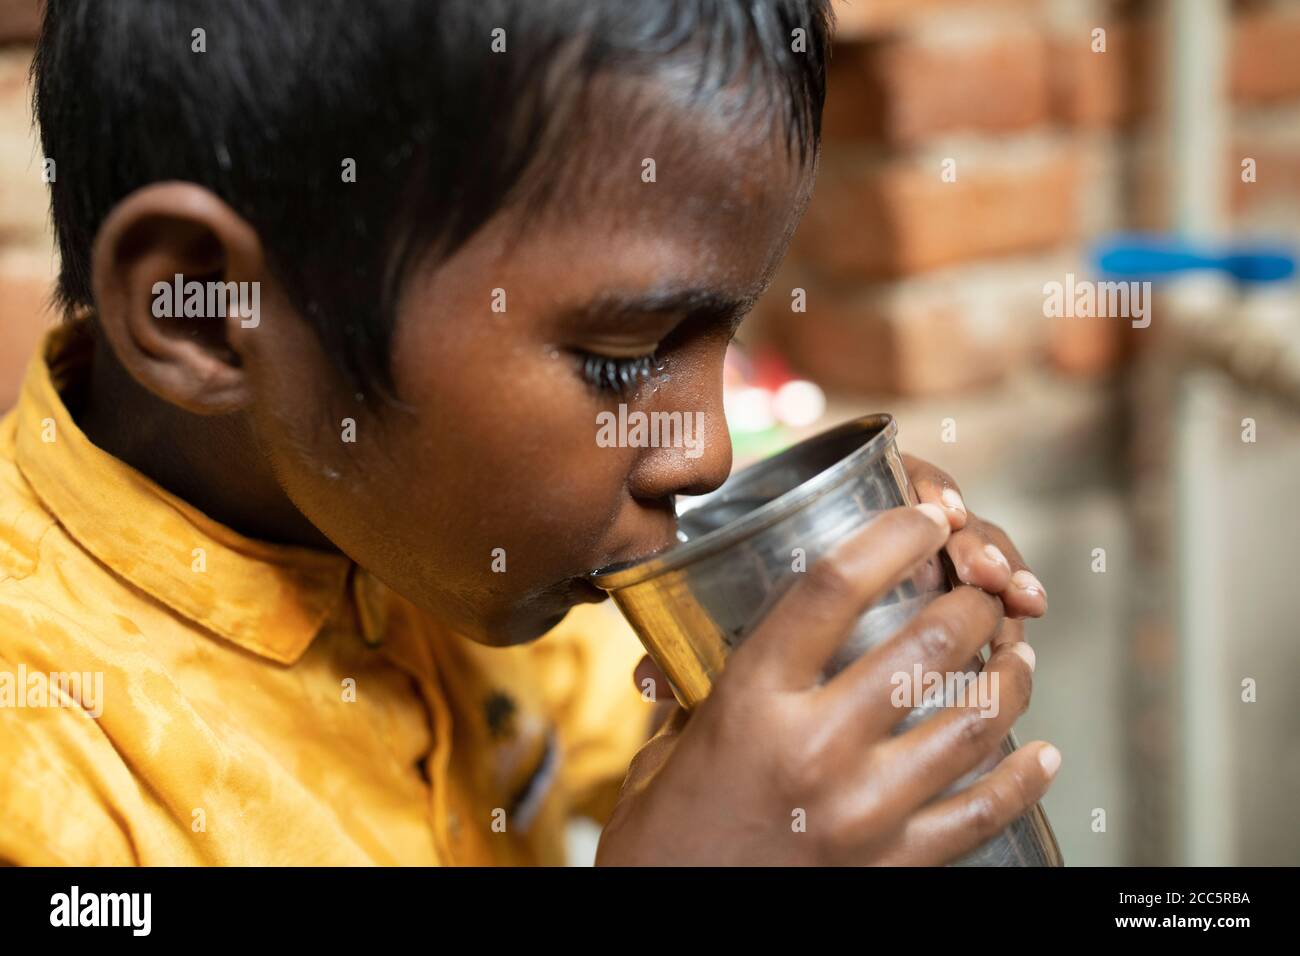 Un ragazzo di otto anni beve acqua dal nuovo rubinetto che sua madre aveva installato recentemente nella casa della famiglia a Bihar, India. Foto Stock